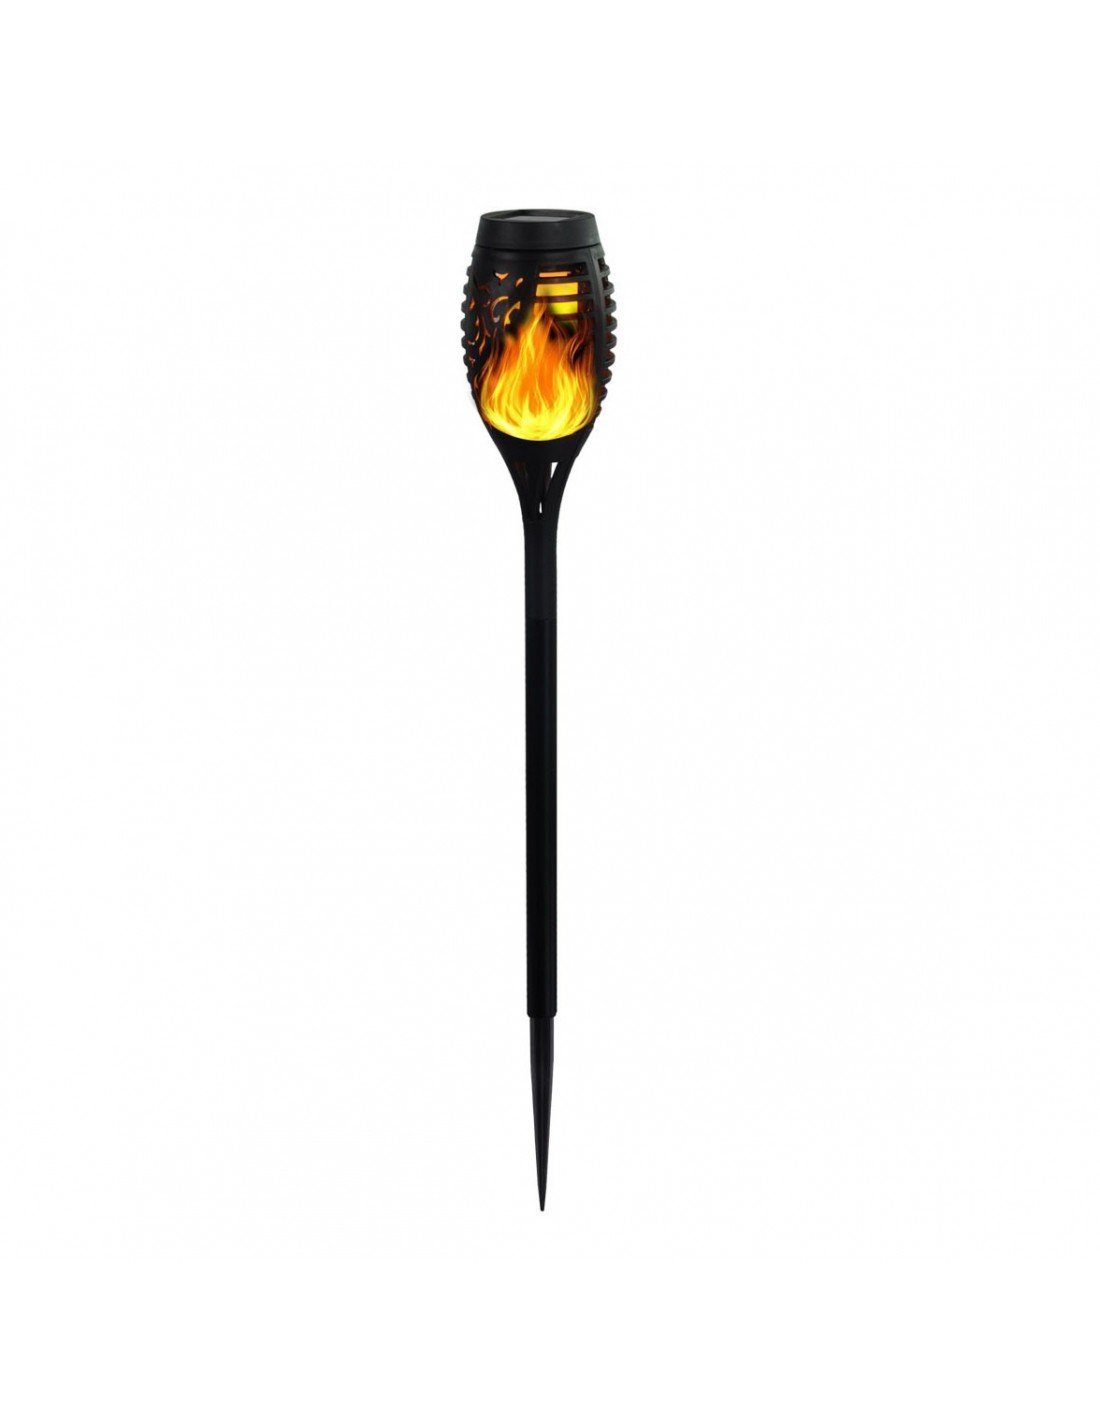 Velamp LED Gartenleuchte Velamp OLYMPIA, Solar-Gartenpfahl 51cm mit Flammen-Effekt, solarbetri